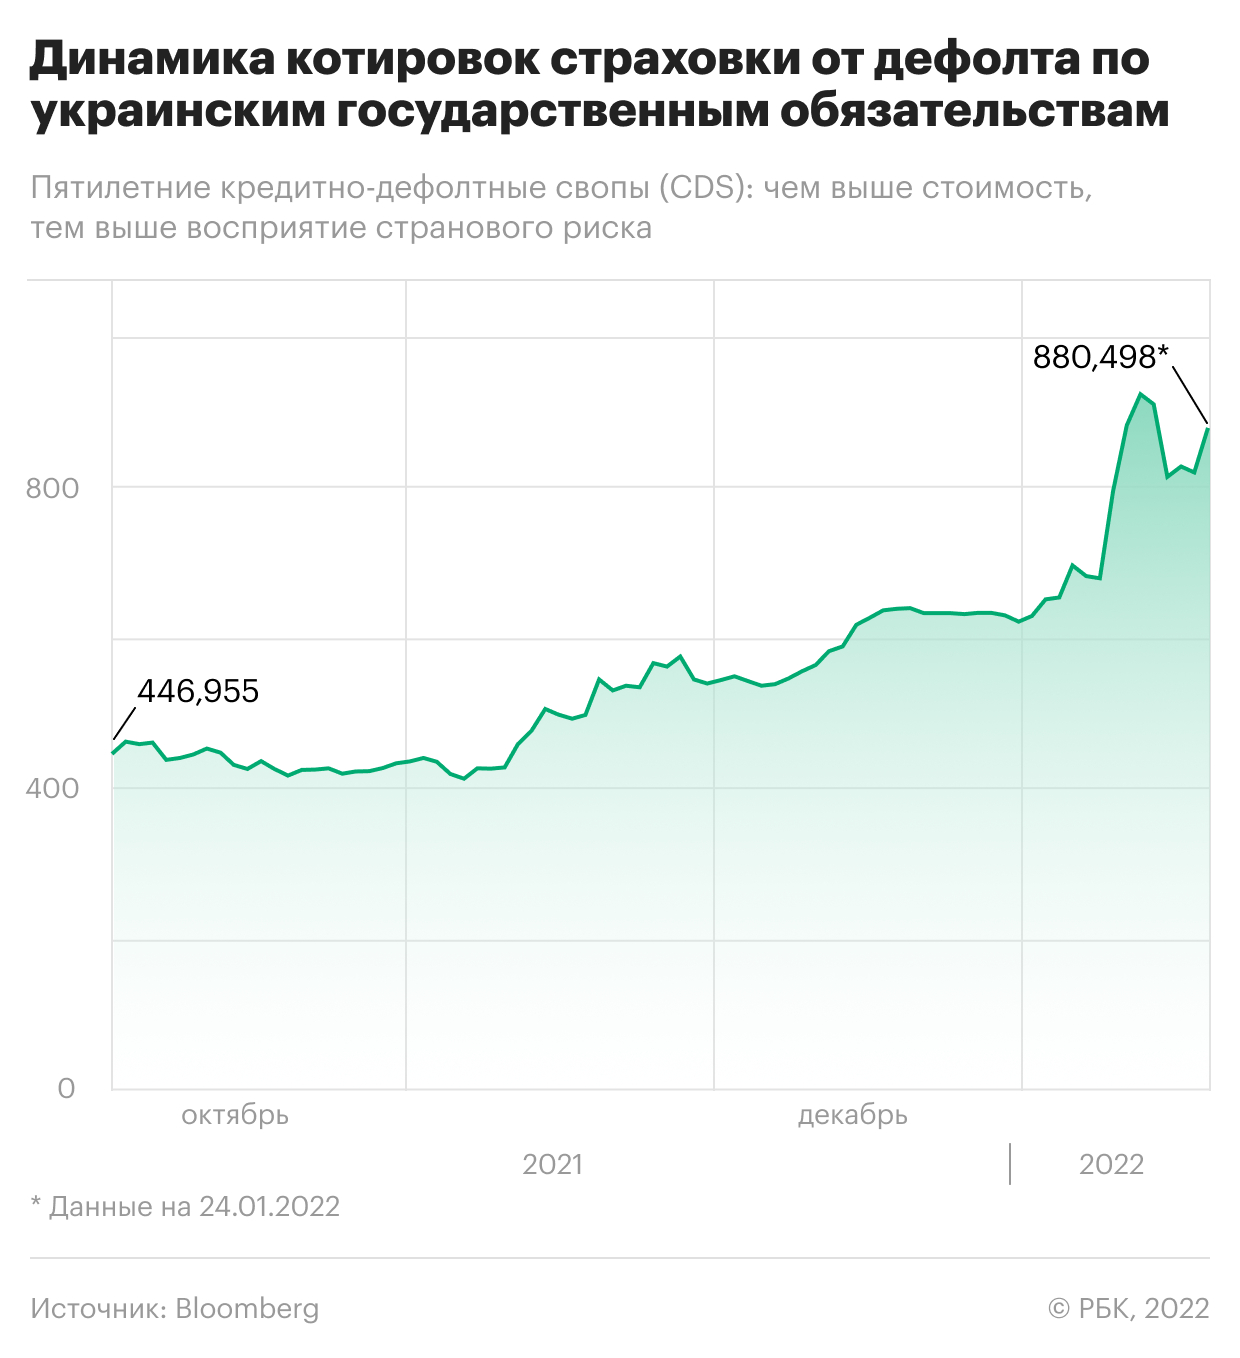 Реакция украинских гривны, биржи и бондов на угрозу войны. Инфографика